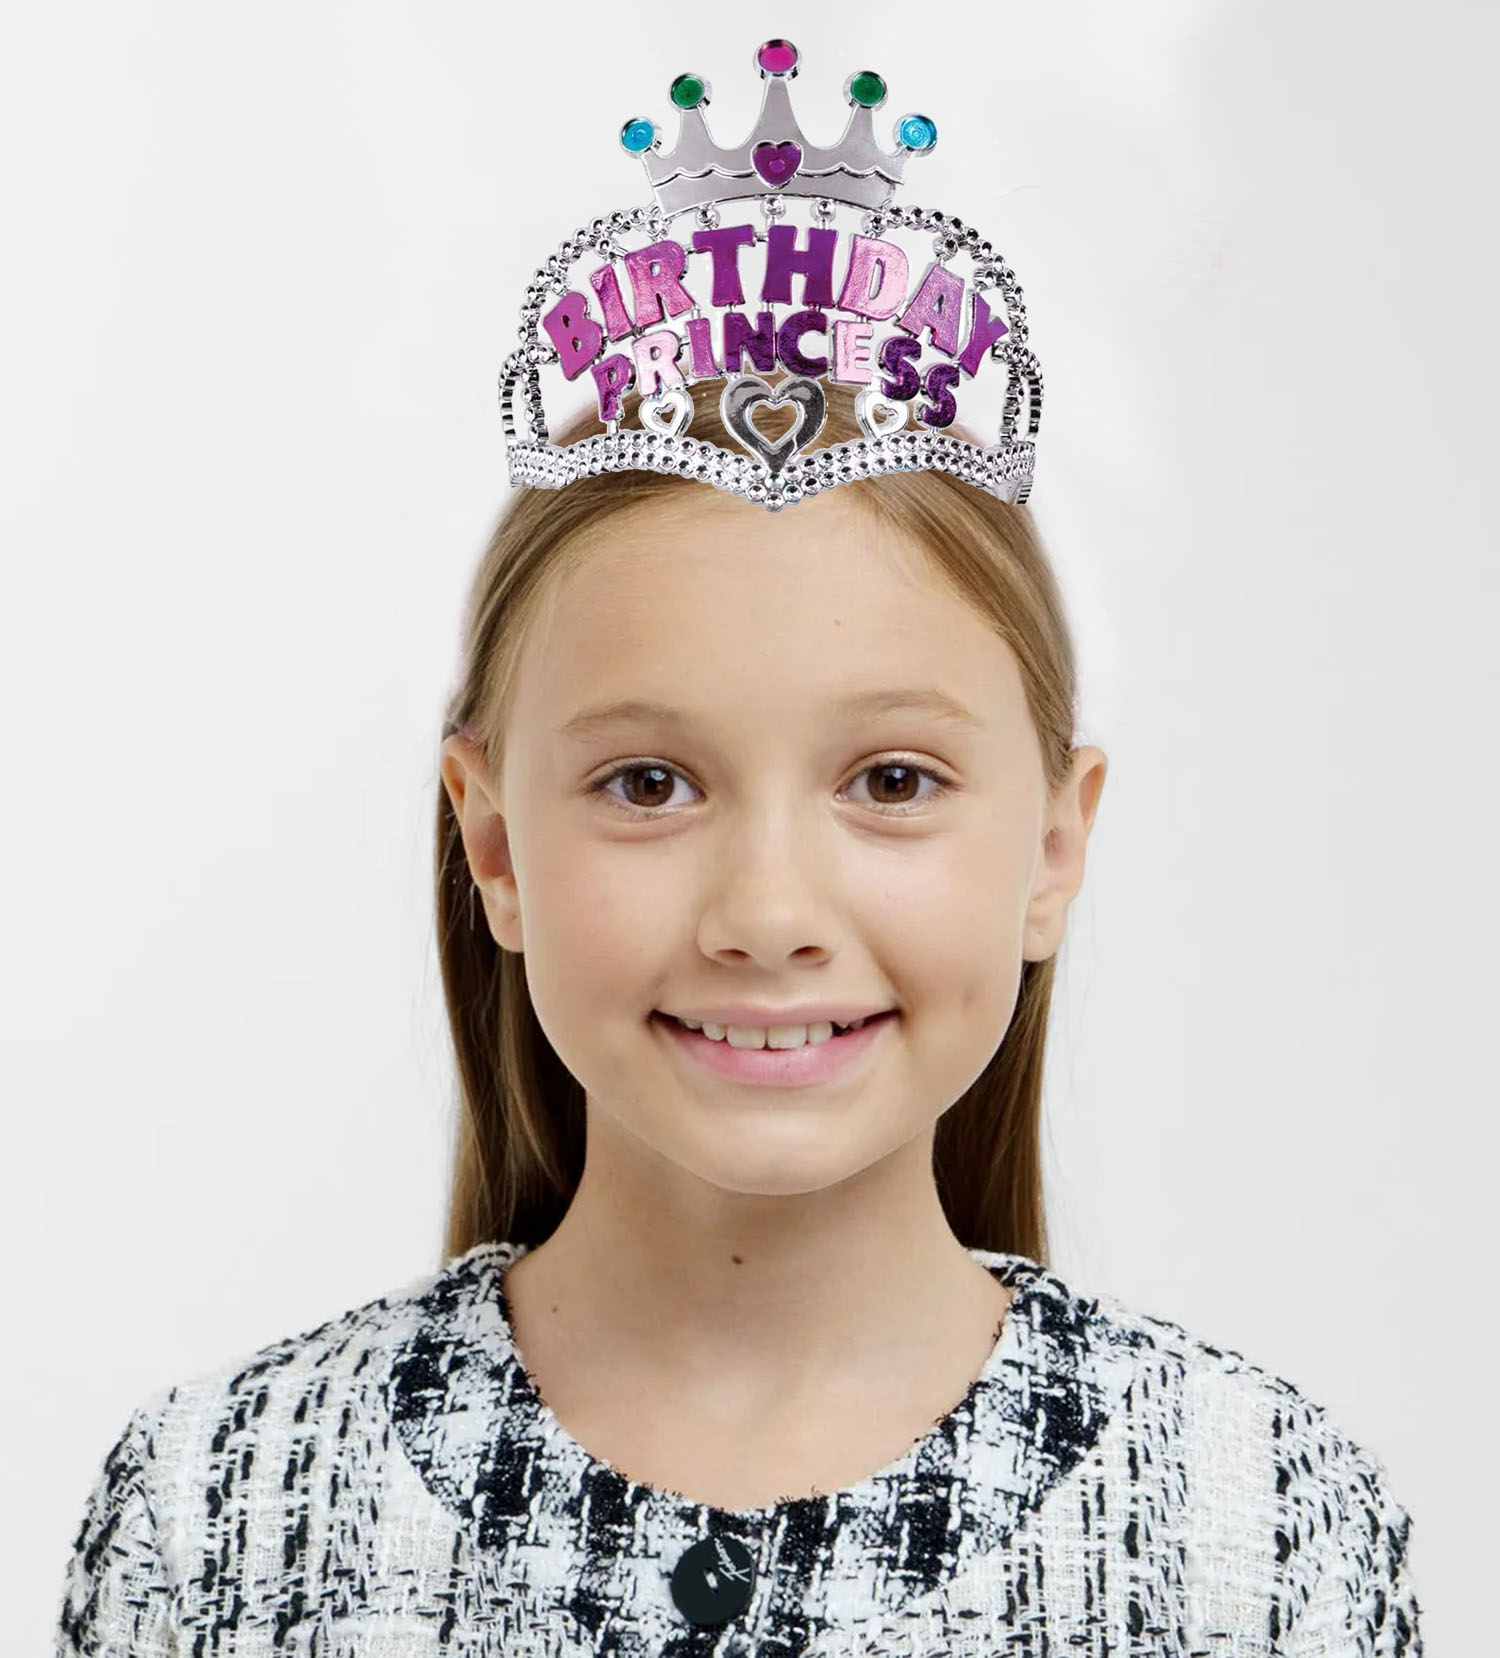 Gümüş Renk Taç Üzeri Pembe Birthday Prenses Yazılı Çocuk Parti Tacı 11X12 cm (Lisinya)